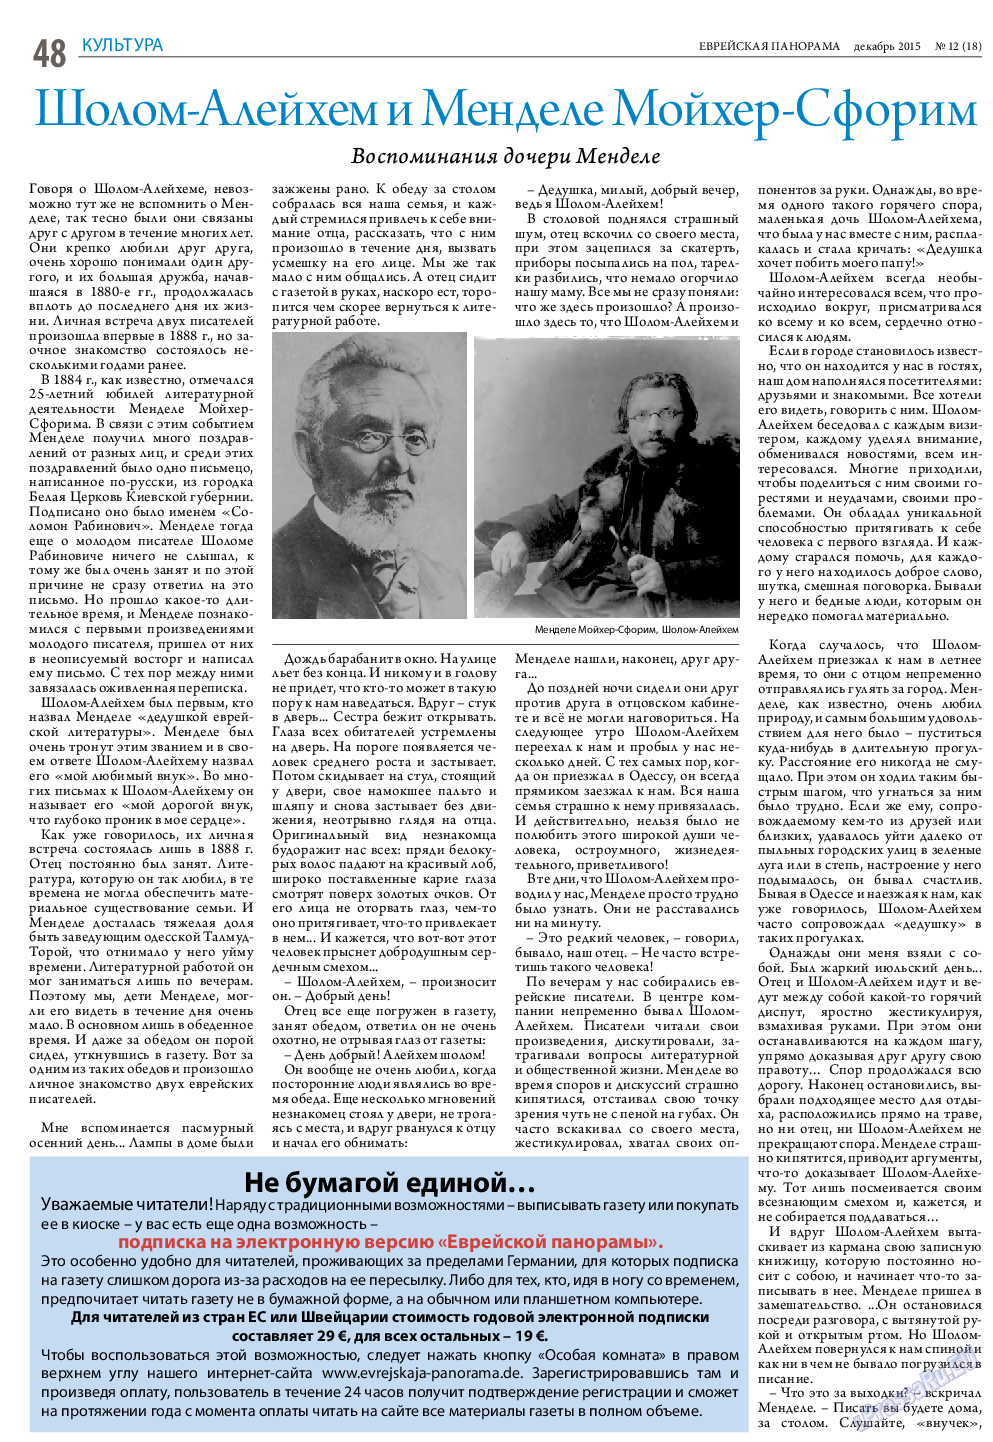 Еврейская панорама (газета). 2015 год, номер 12, стр. 48